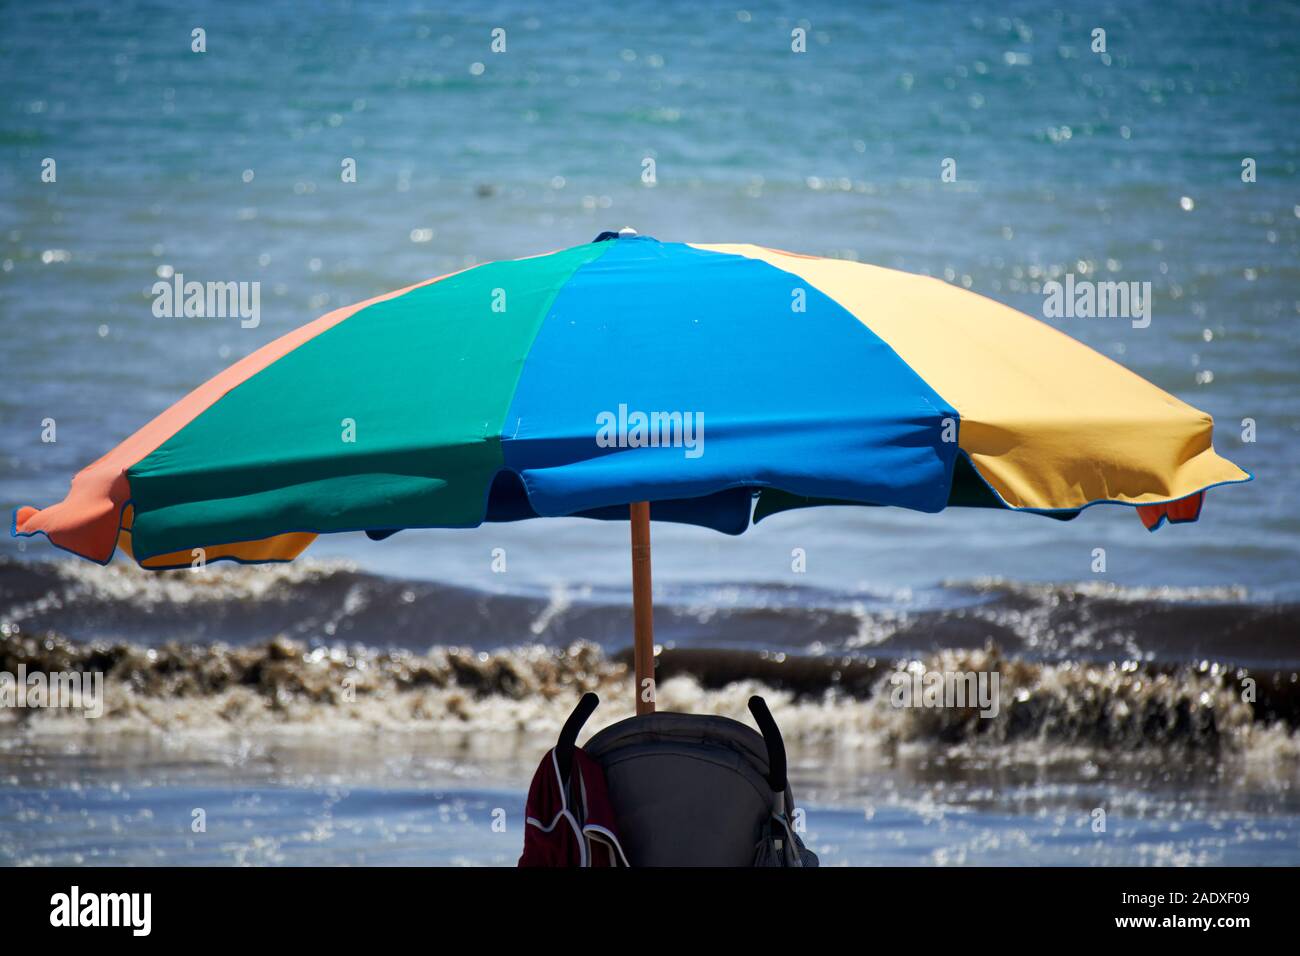 Ombrage parapluie poussette landau sur Cocoa beach floride usa Banque D'Images